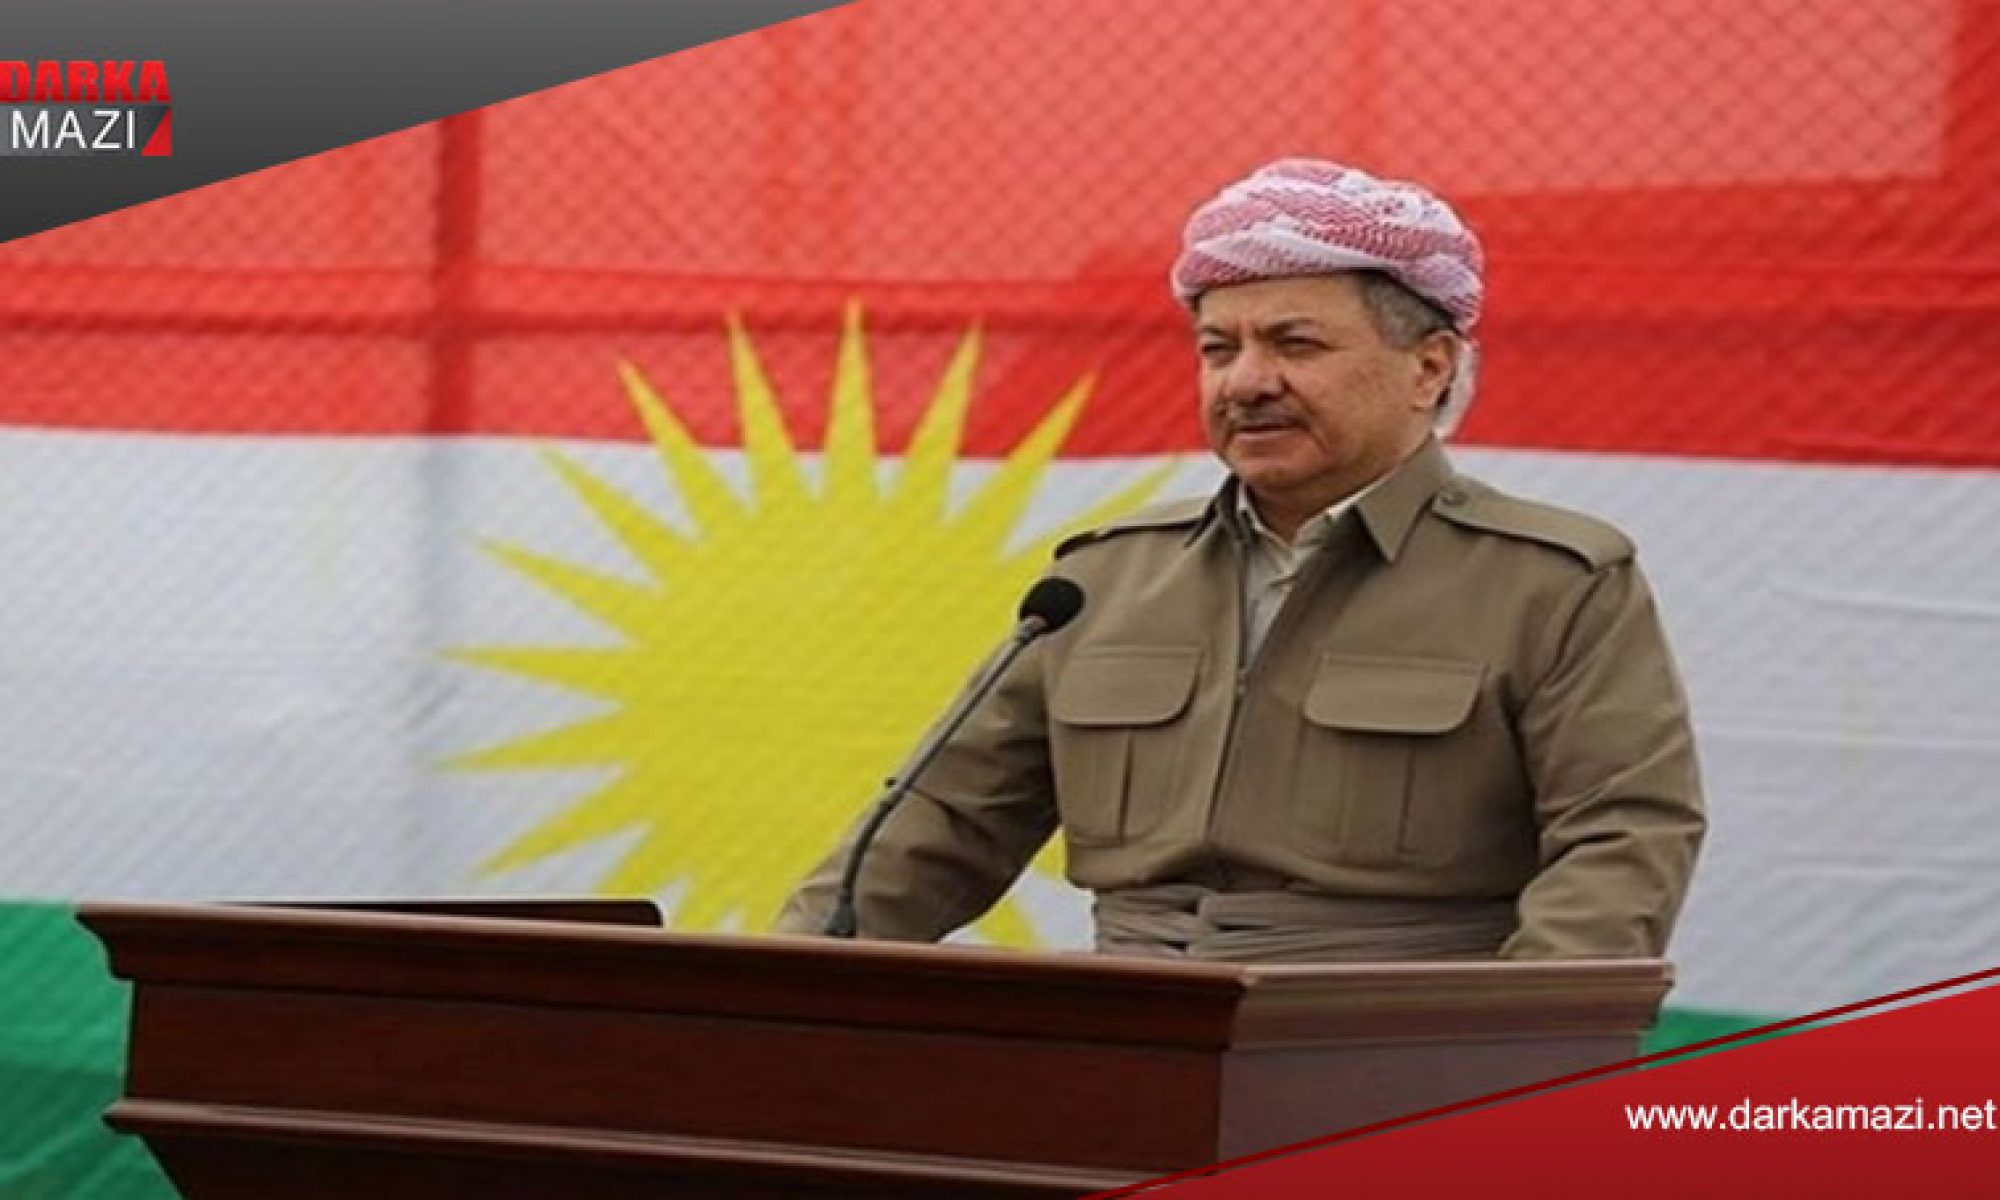 Pirdê direnişinin üçüncü yılında Barzani: Yarın bu güne benzemeyecek